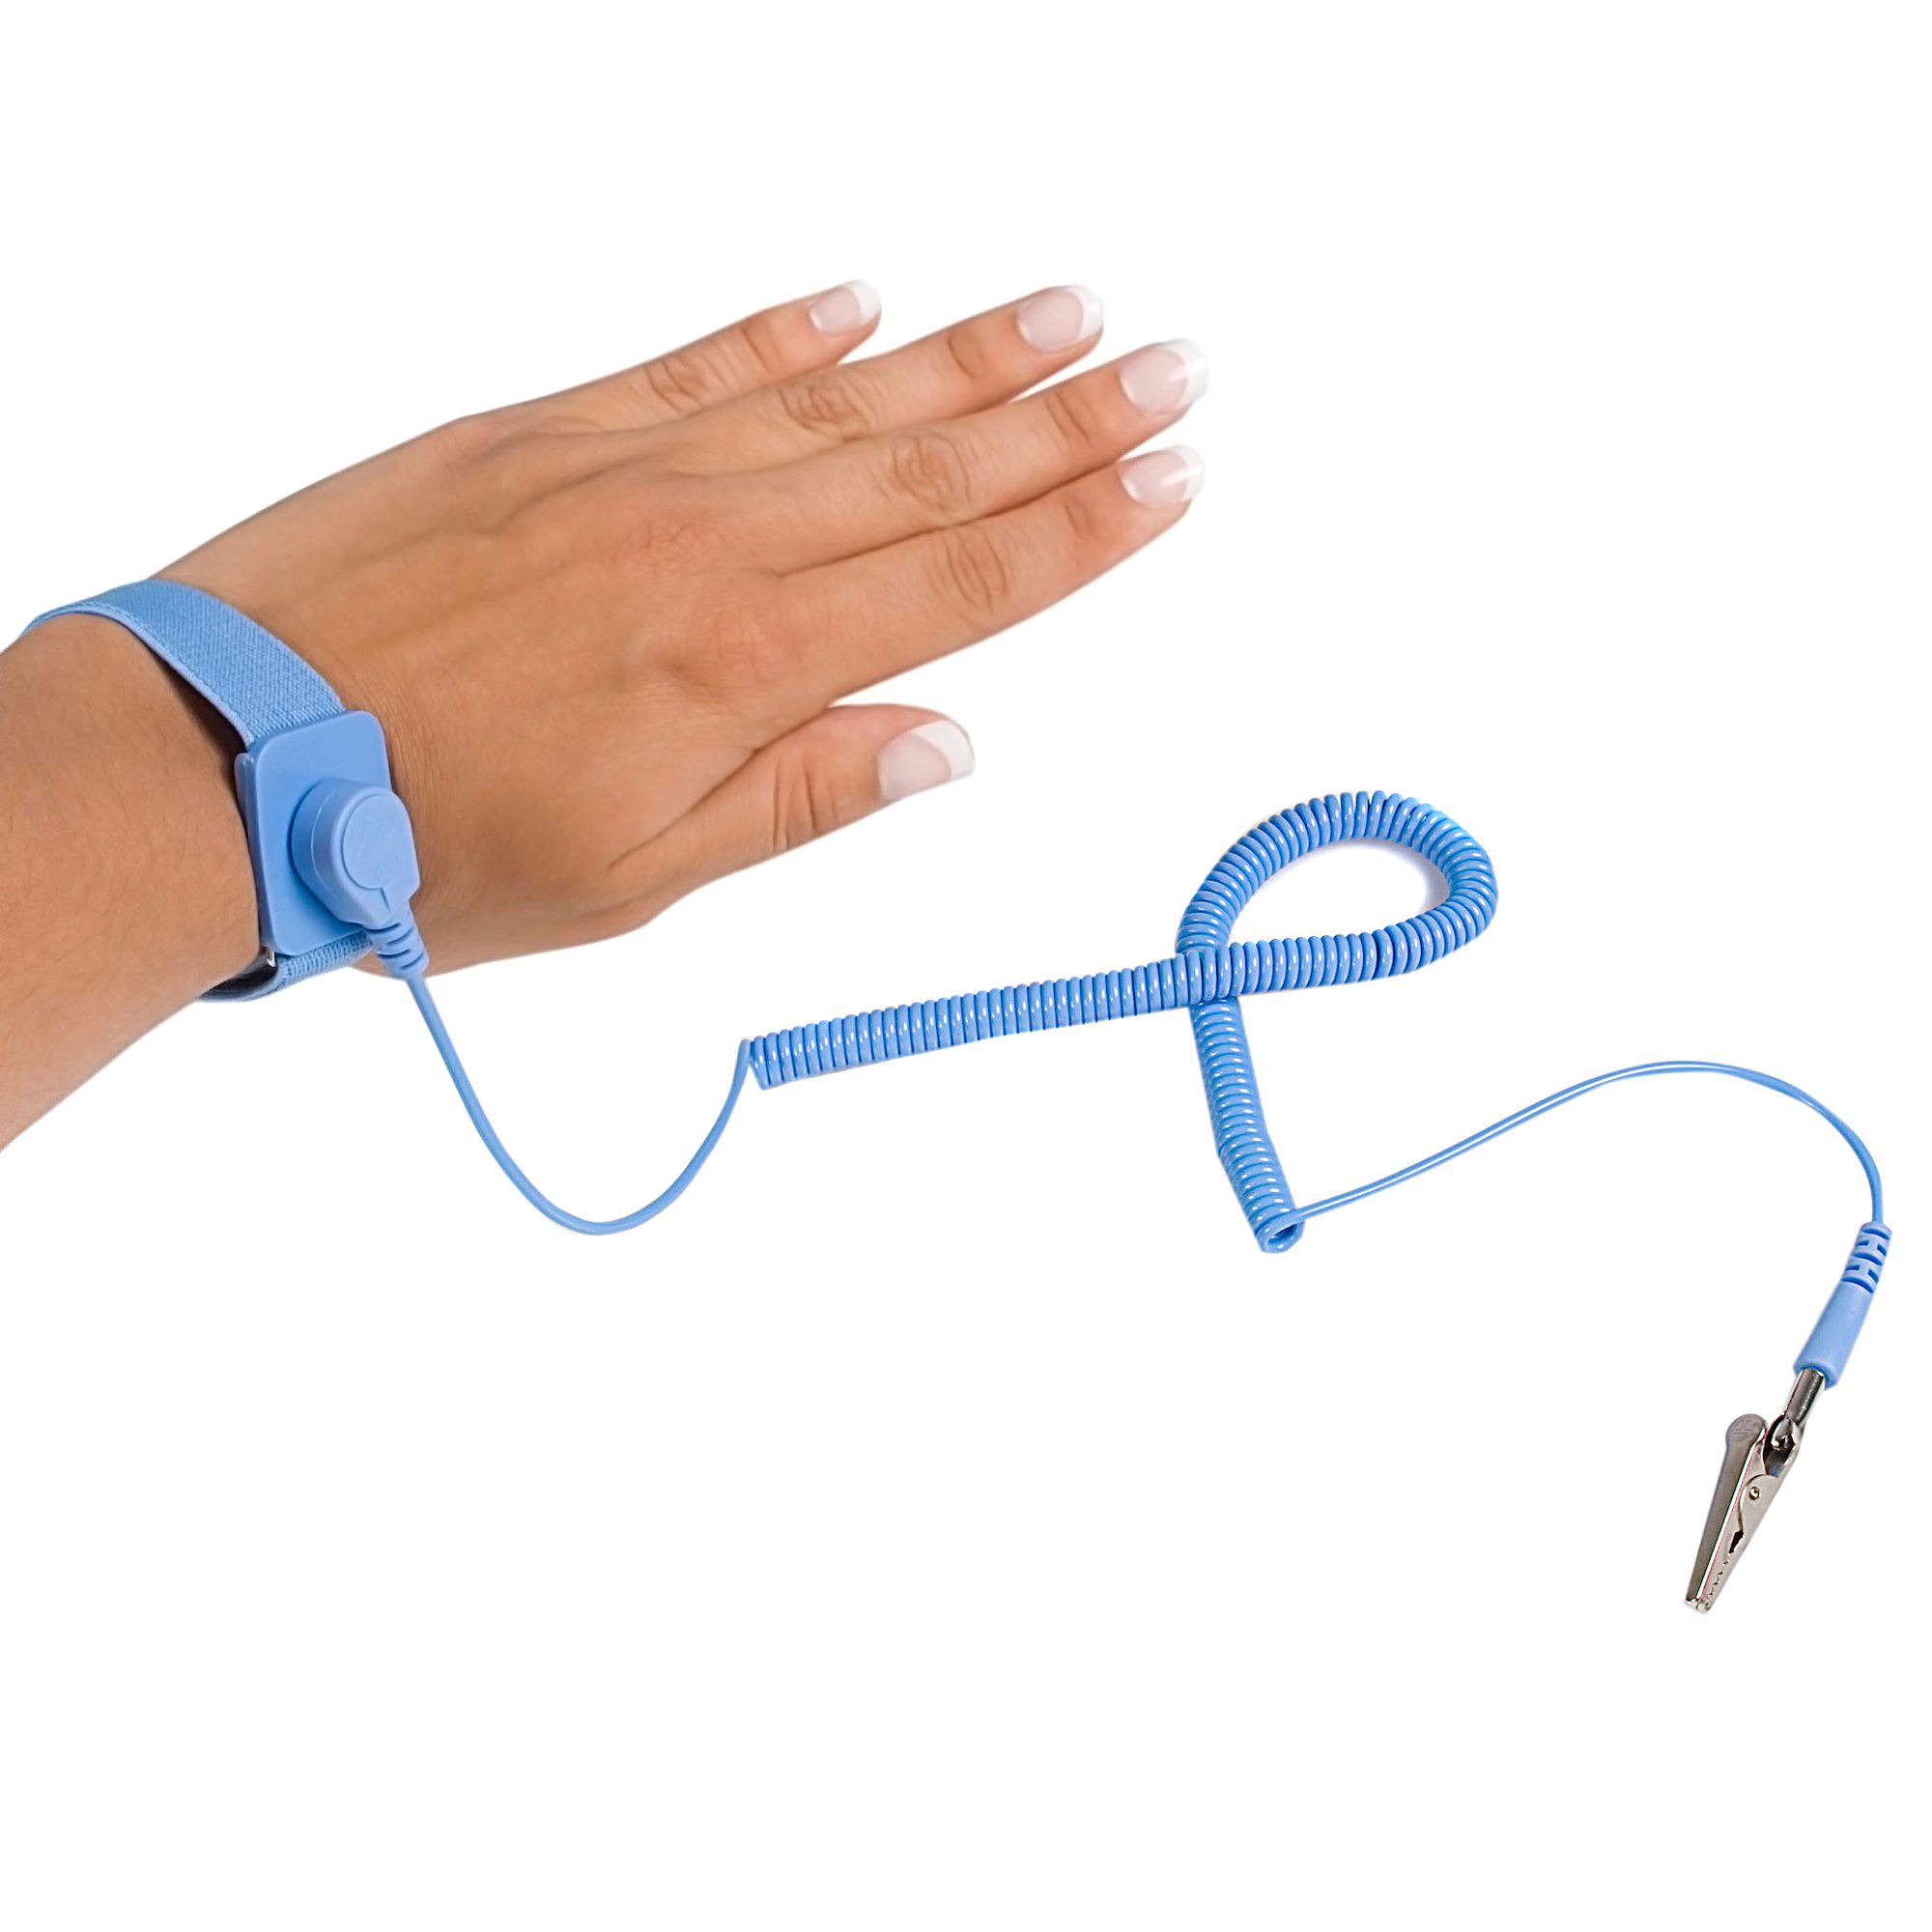 NEW Anti Static Antistatic ESD Adjustable Wrist Strap Band Grounding 1Megohm ±5% 